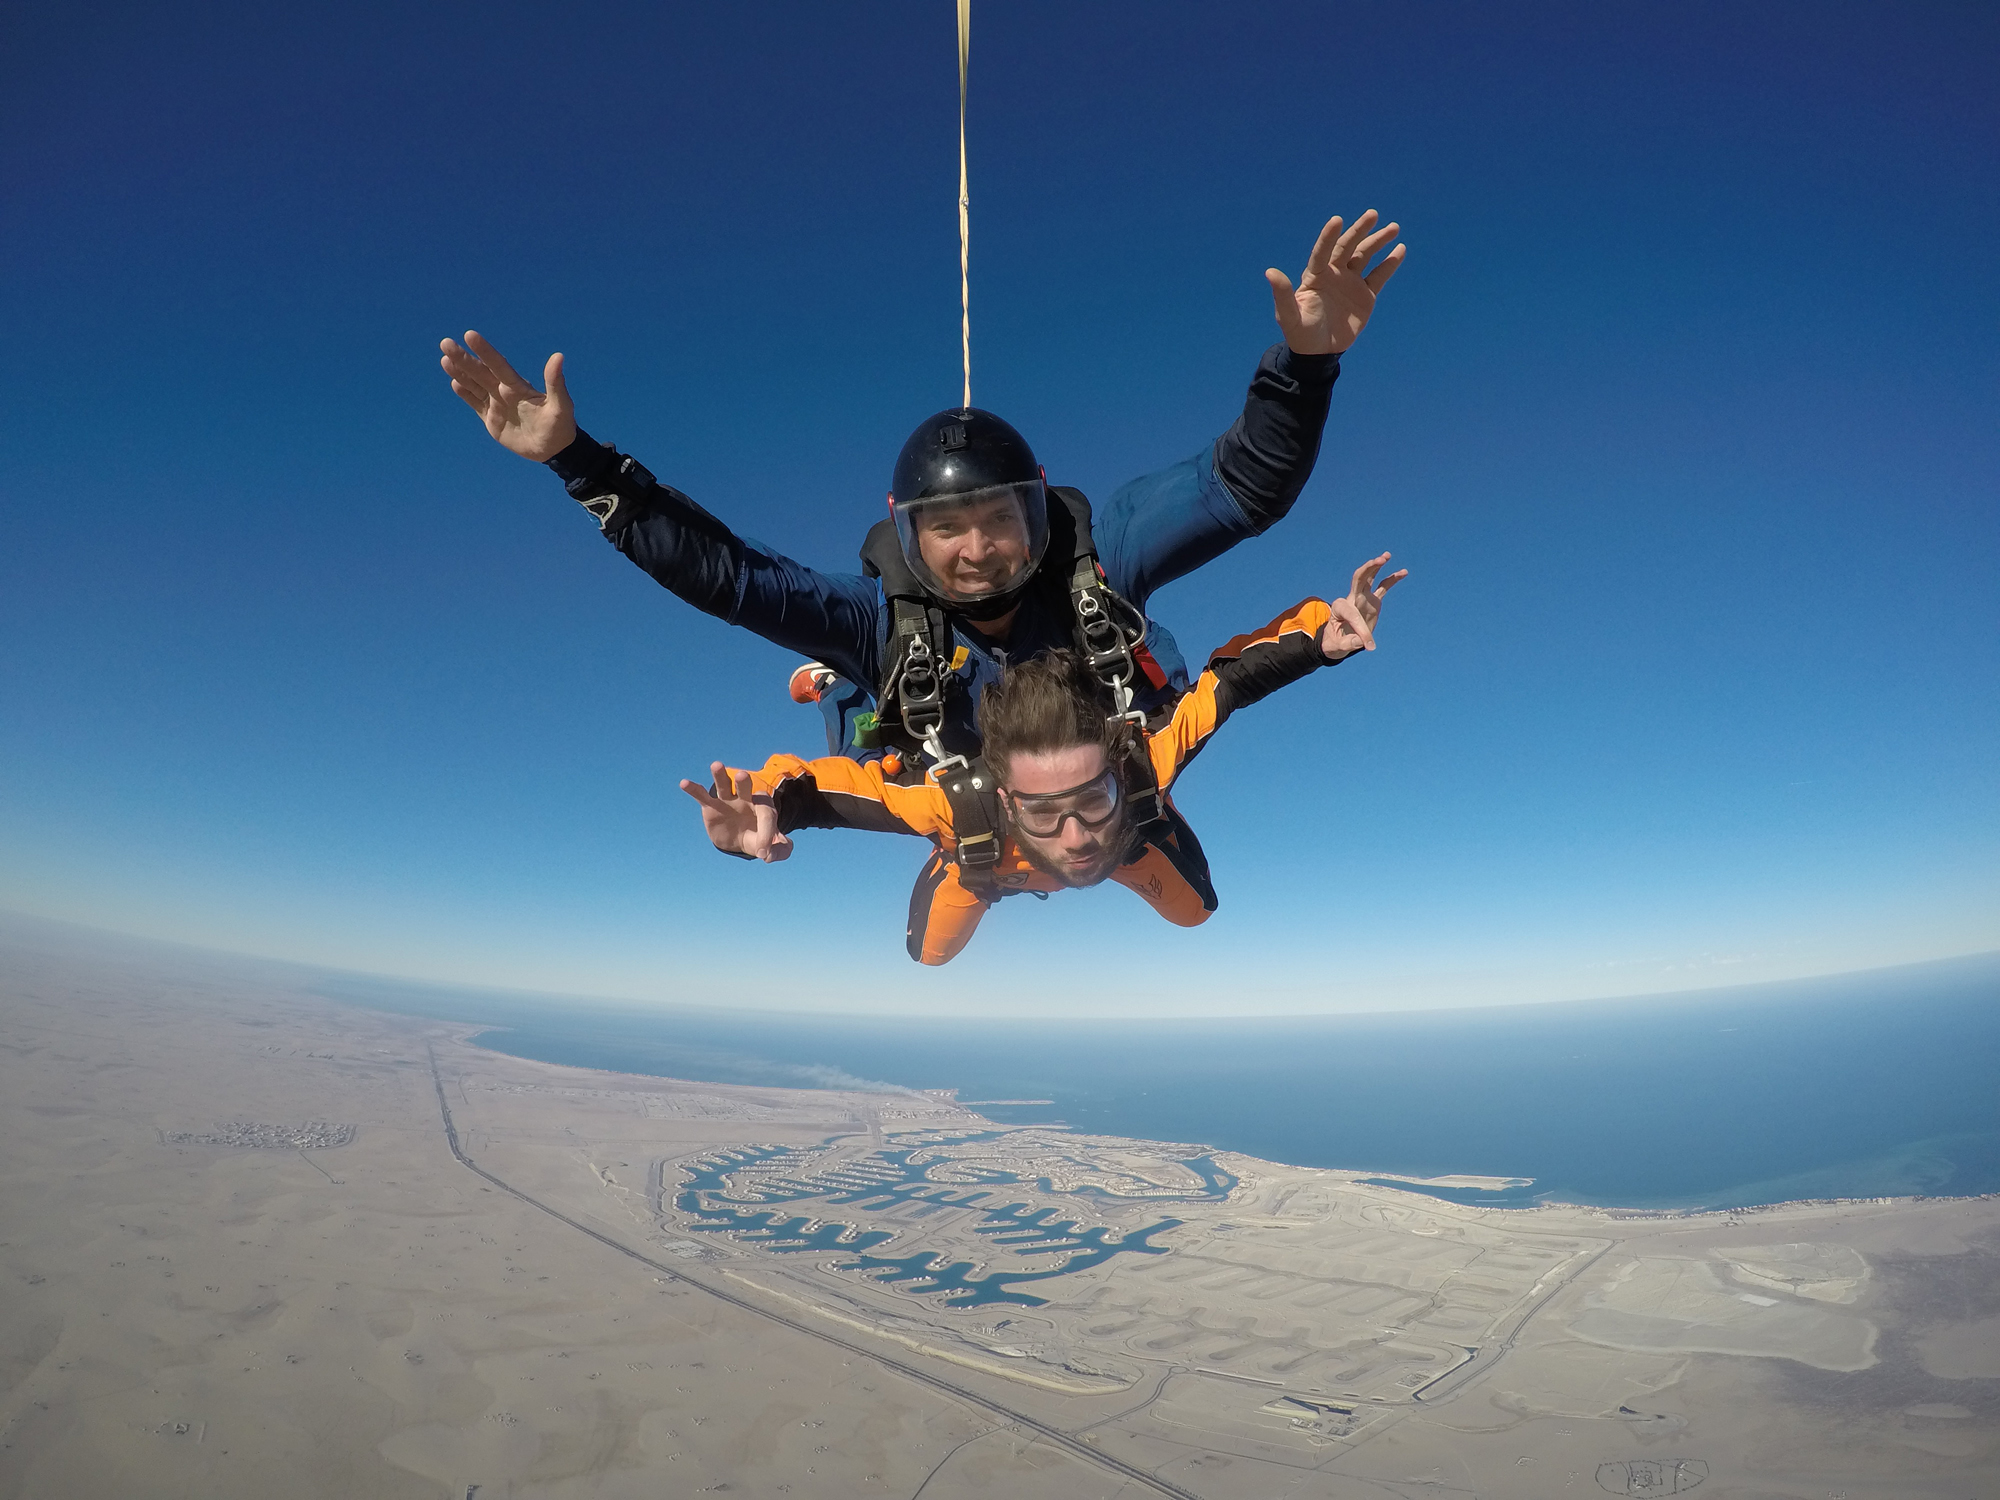 Kuwaiti fans of free skydiving volunteers